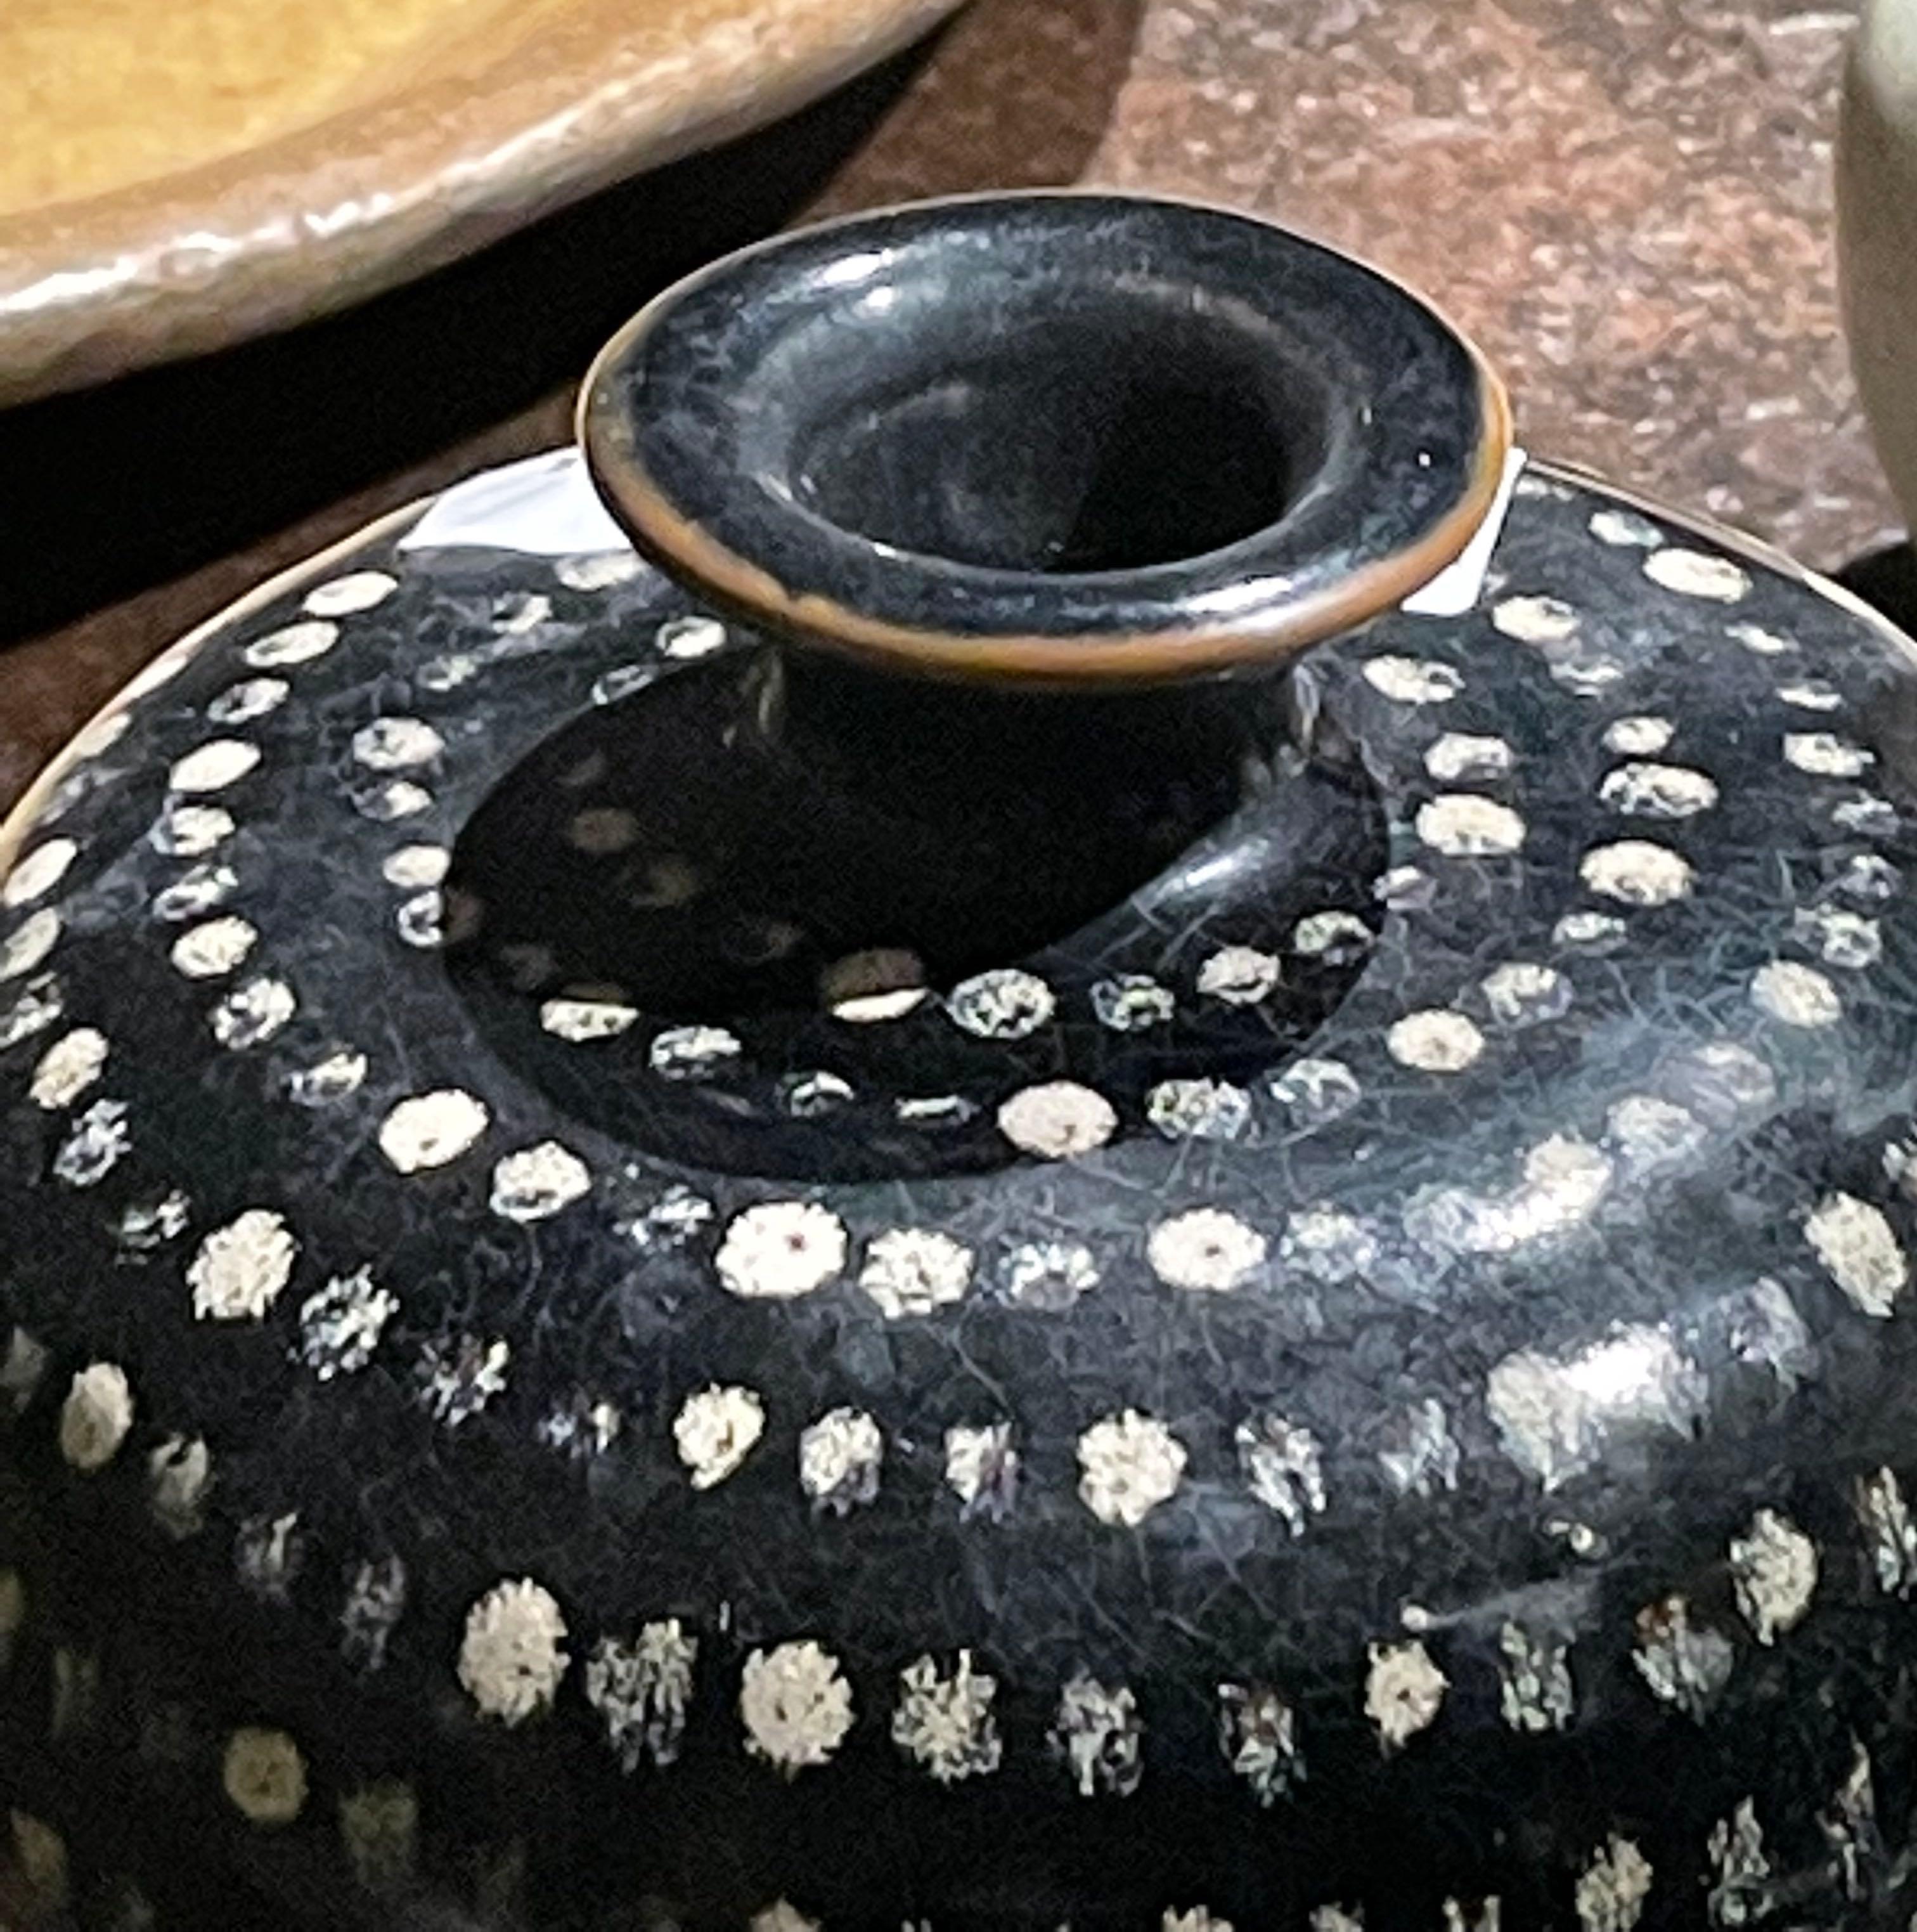 Vase chinois contemporain en céramique noir à pois crème.
Vase courbé et galbé.
Deux disponibles et vendus individuellement.
Fait partie d'une grande collection.
 